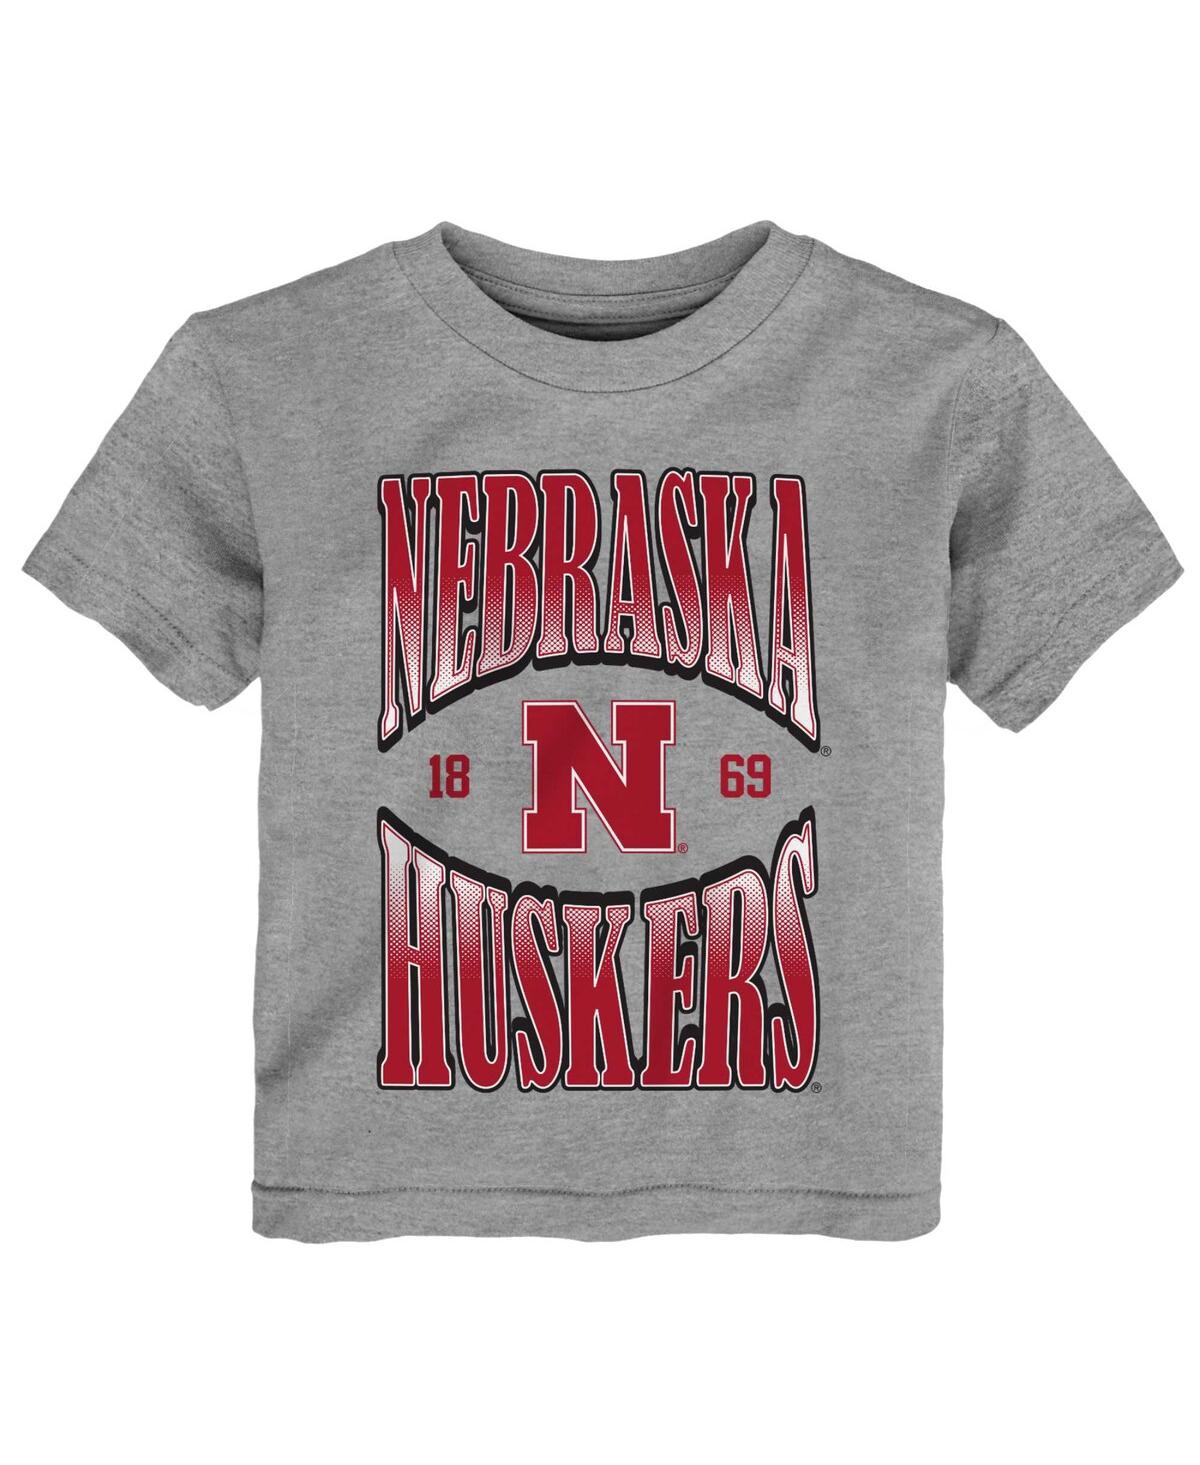 Outerstuff Babies' Toddler Boys And Girls Heather Gray Nebraska Huskers Top Class T-shirt